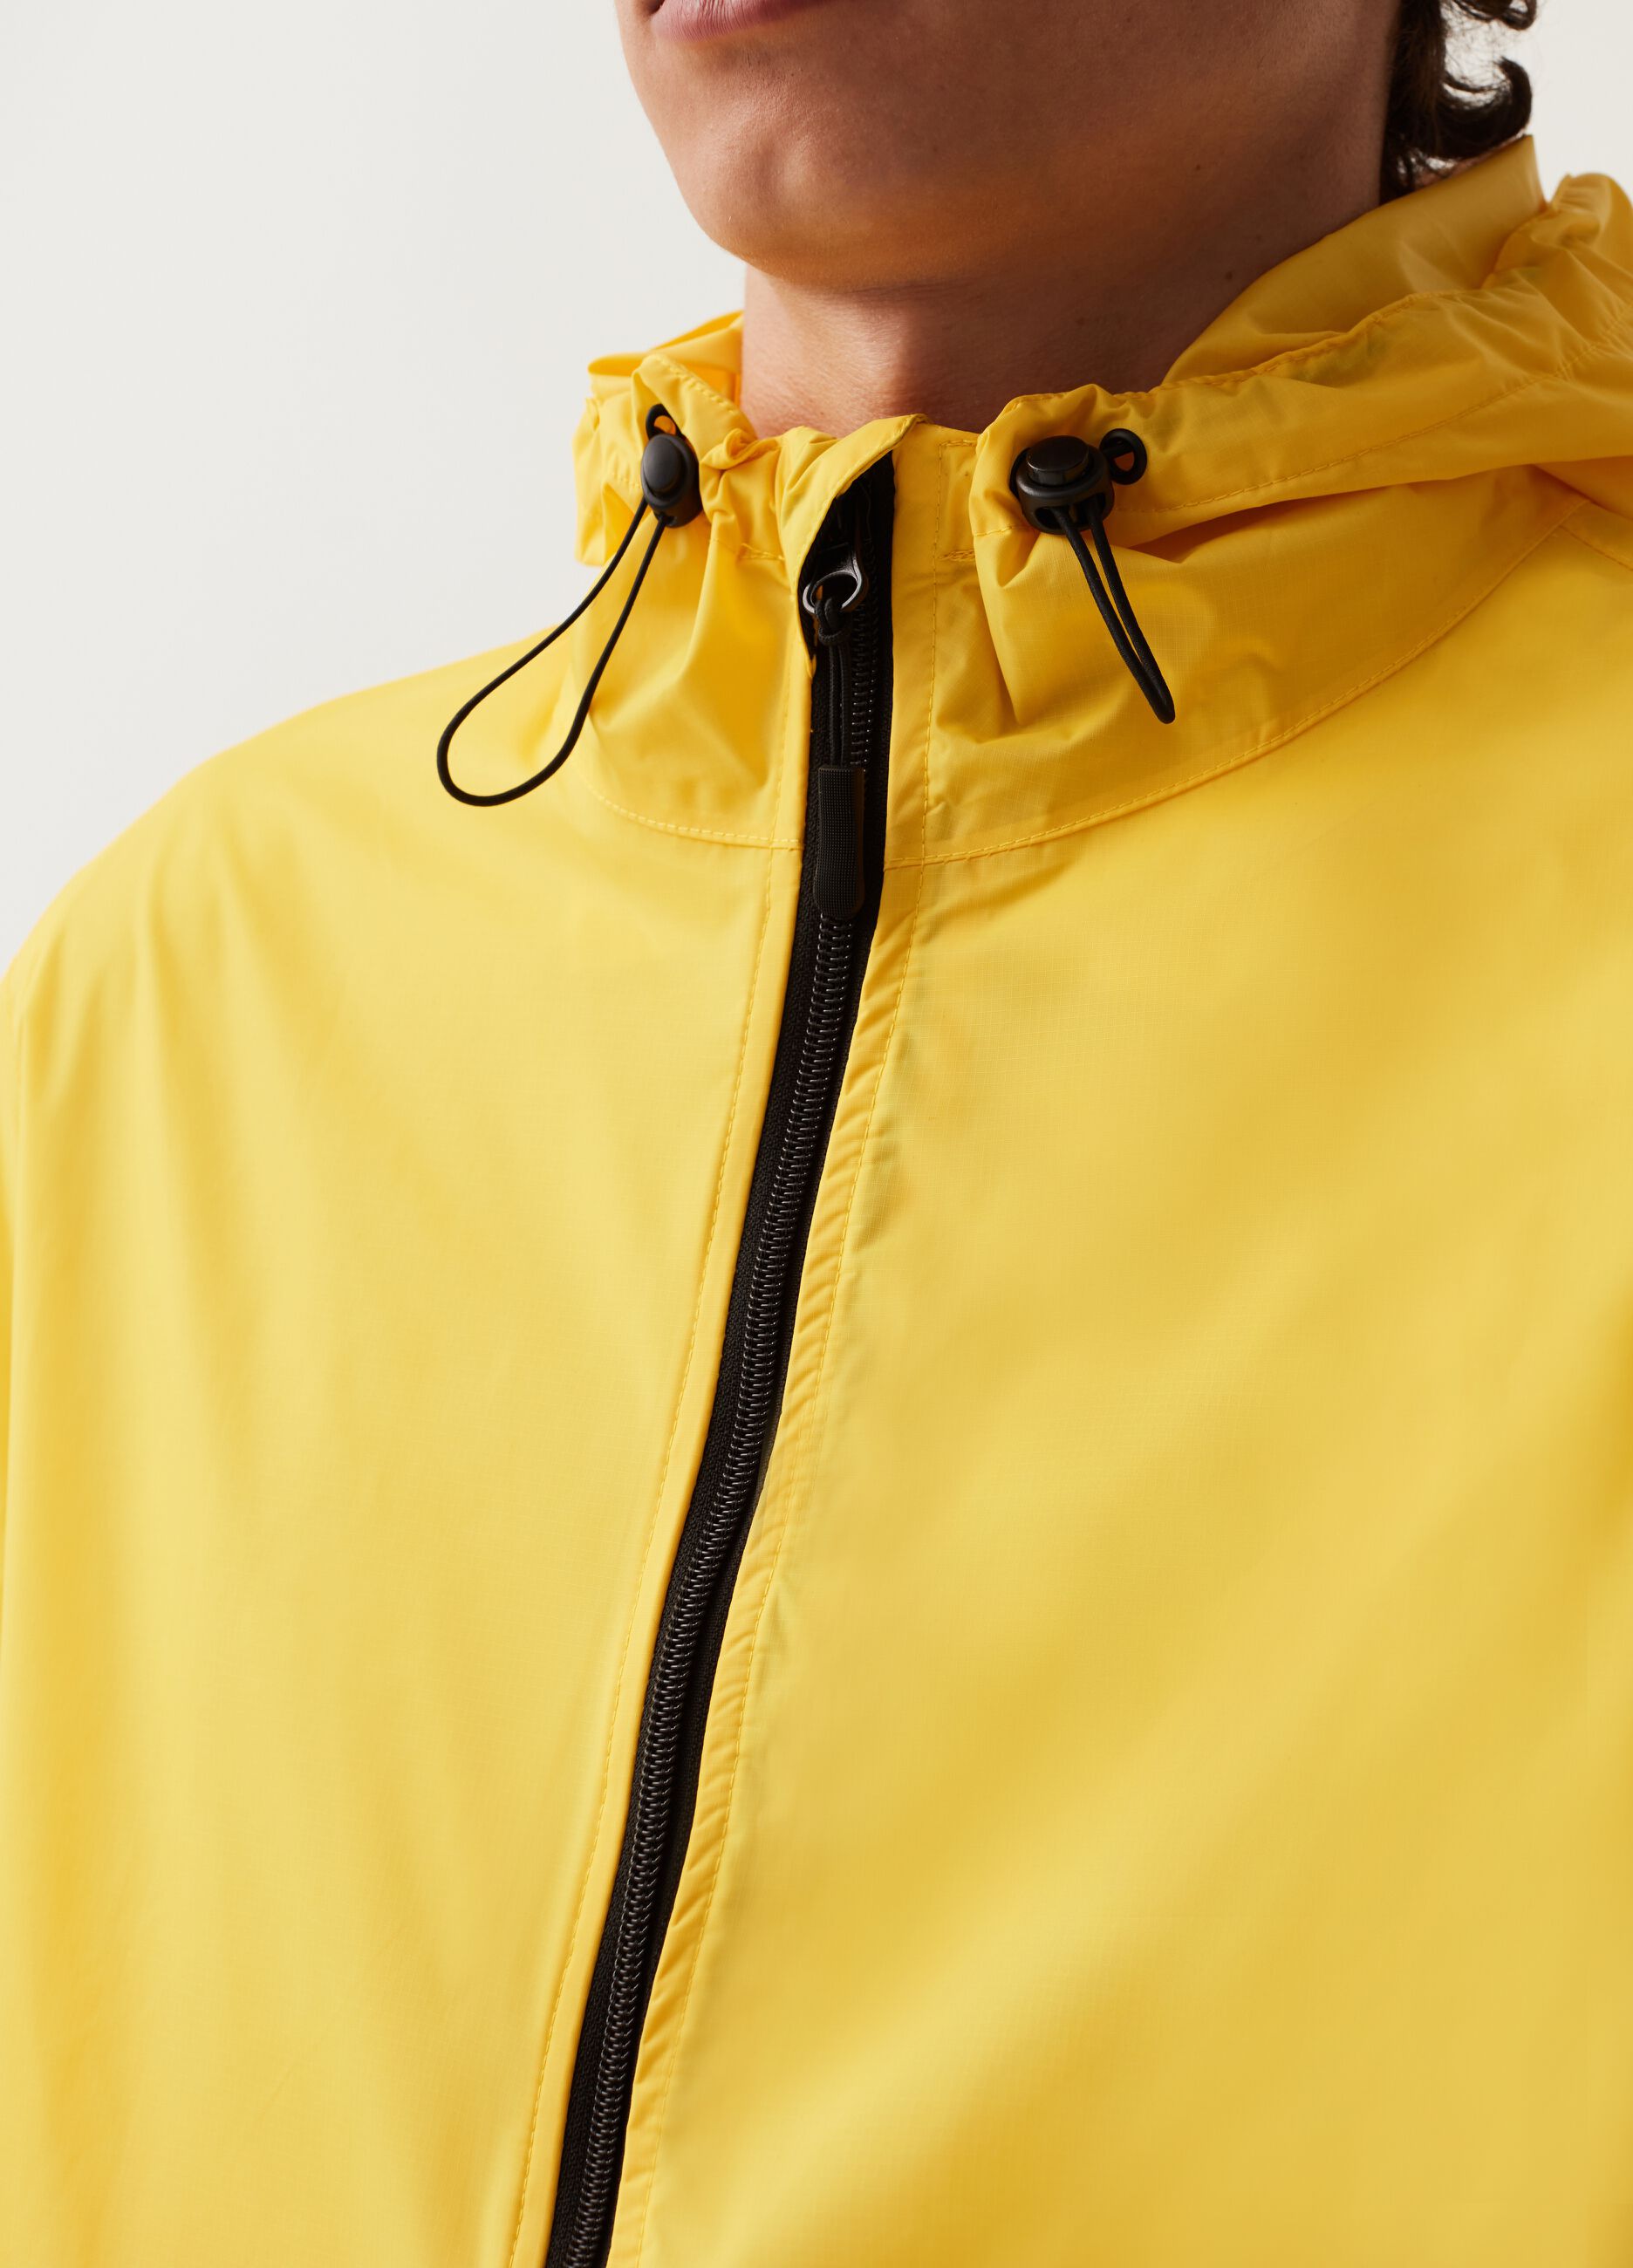 Short waterproof jacket with hood